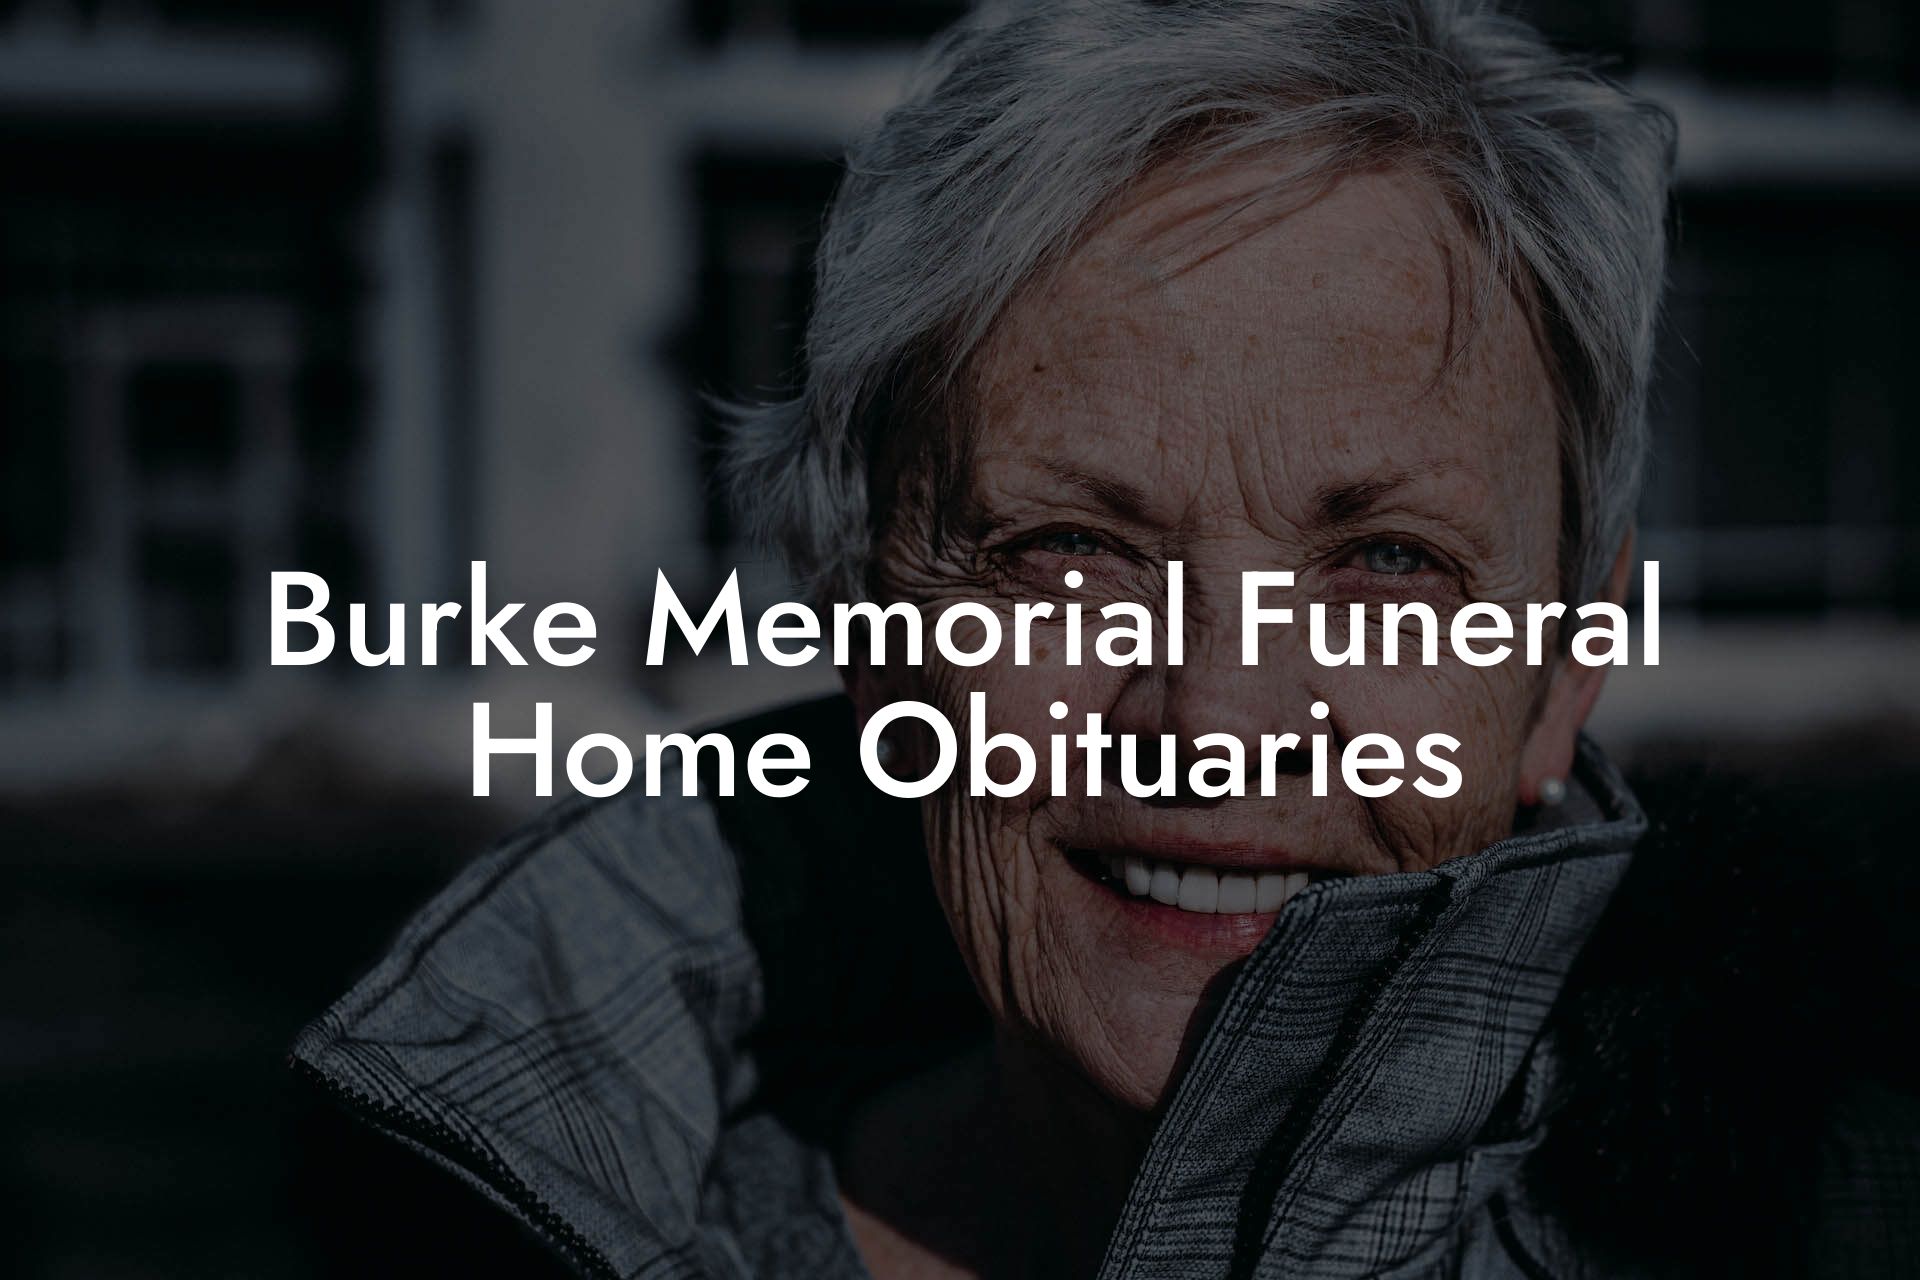 Burke Memorial Funeral Home Obituaries